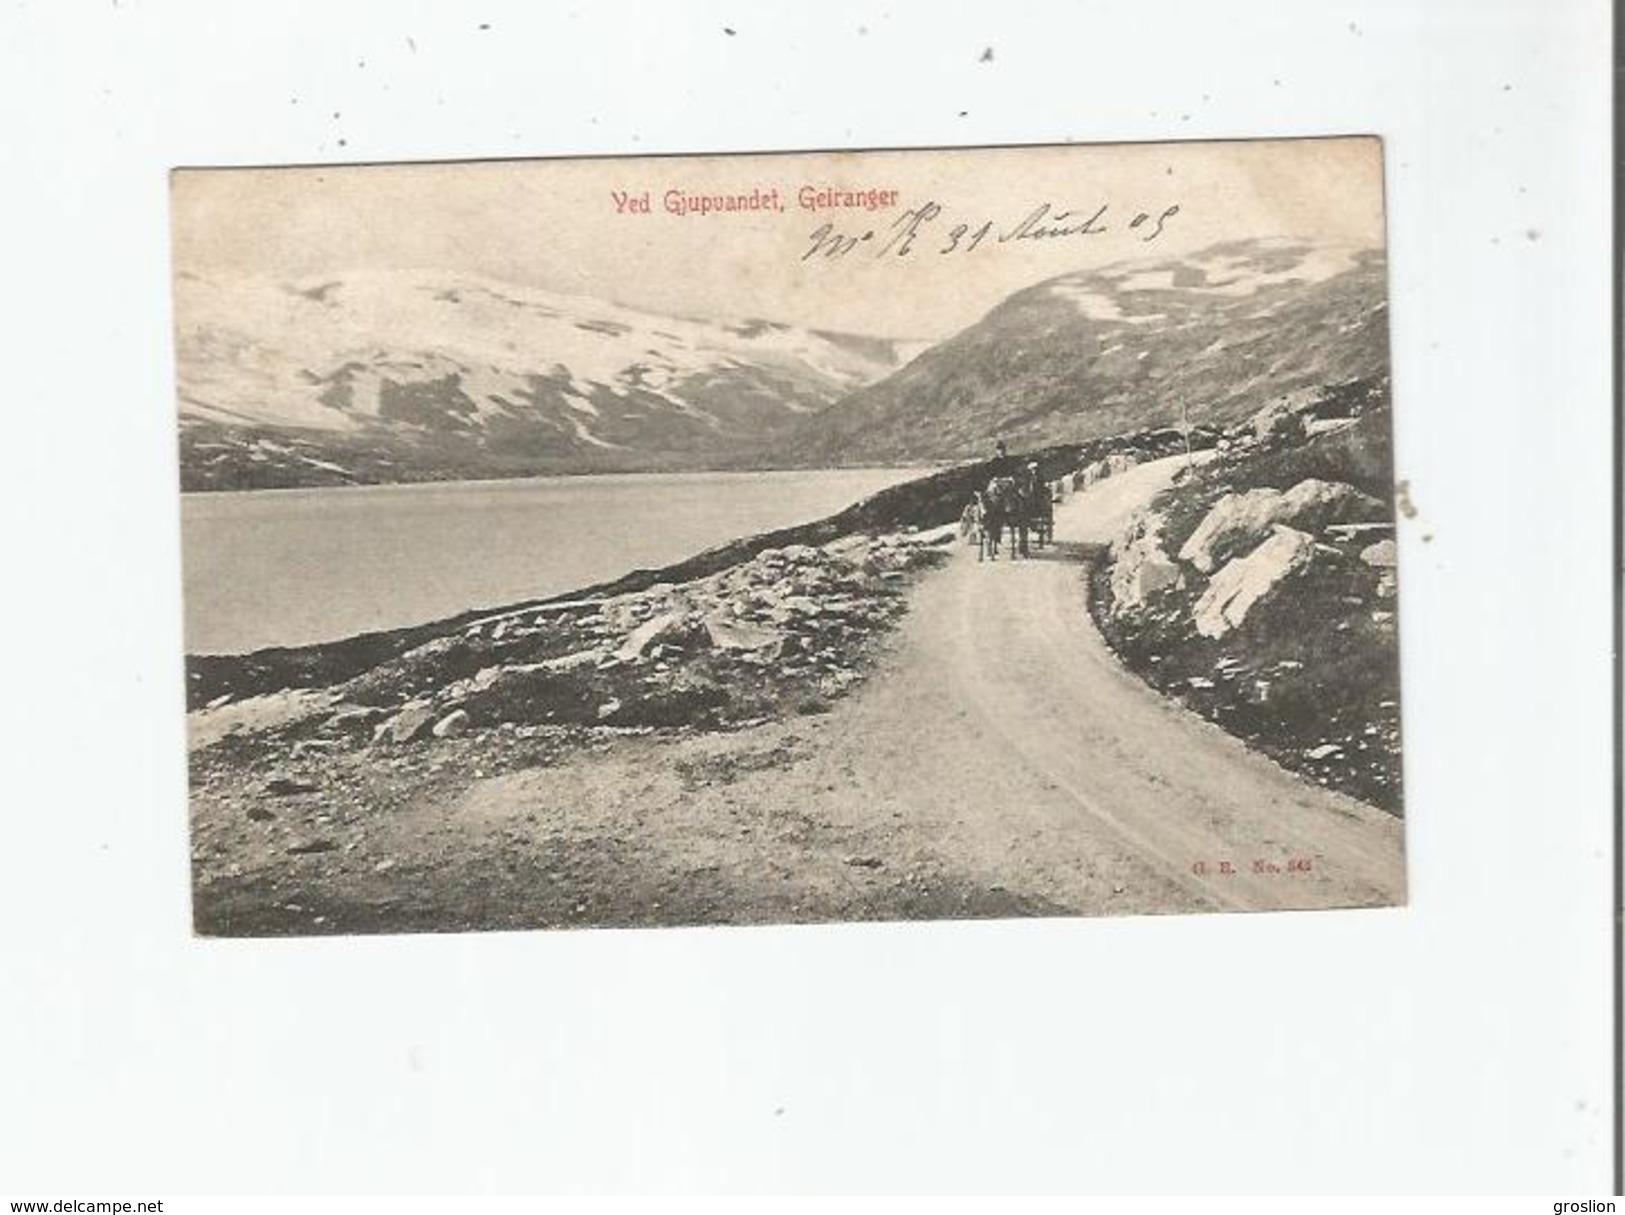 GEIRANGER 847  VED GJUPUANDET 1905 - Norvège